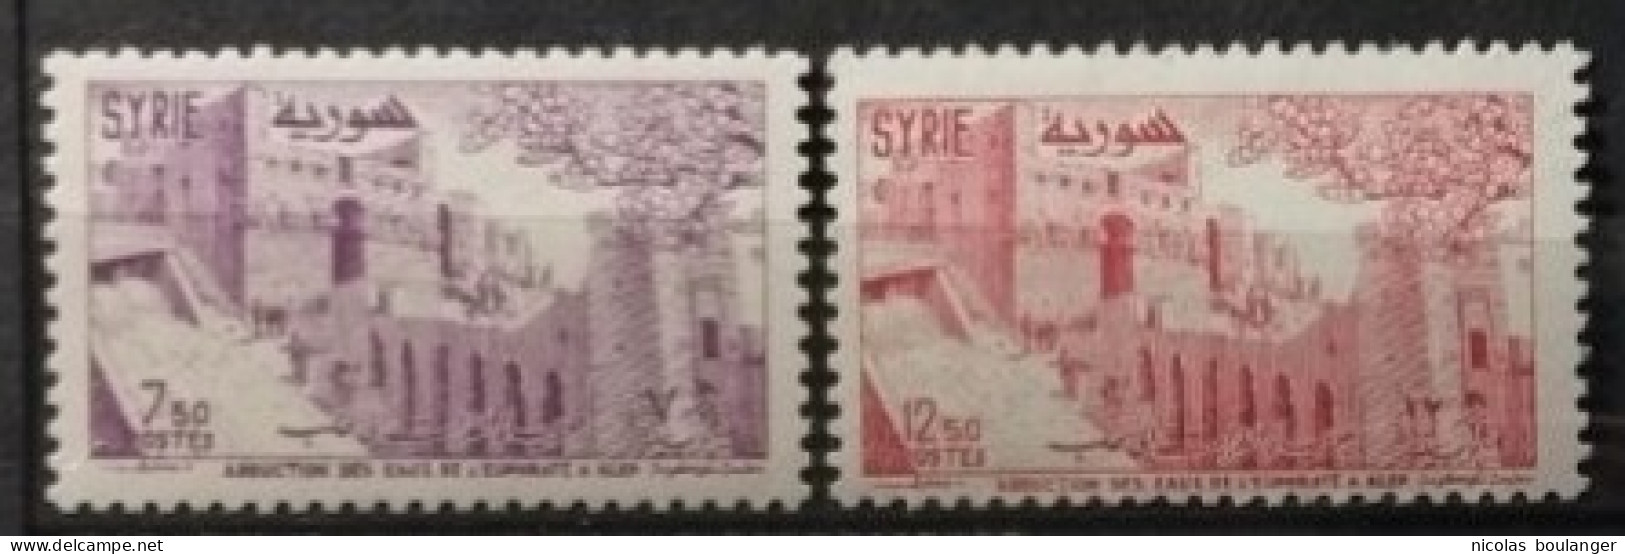 Syrie 1955 / Yvert N°76-77 / ** - Syria